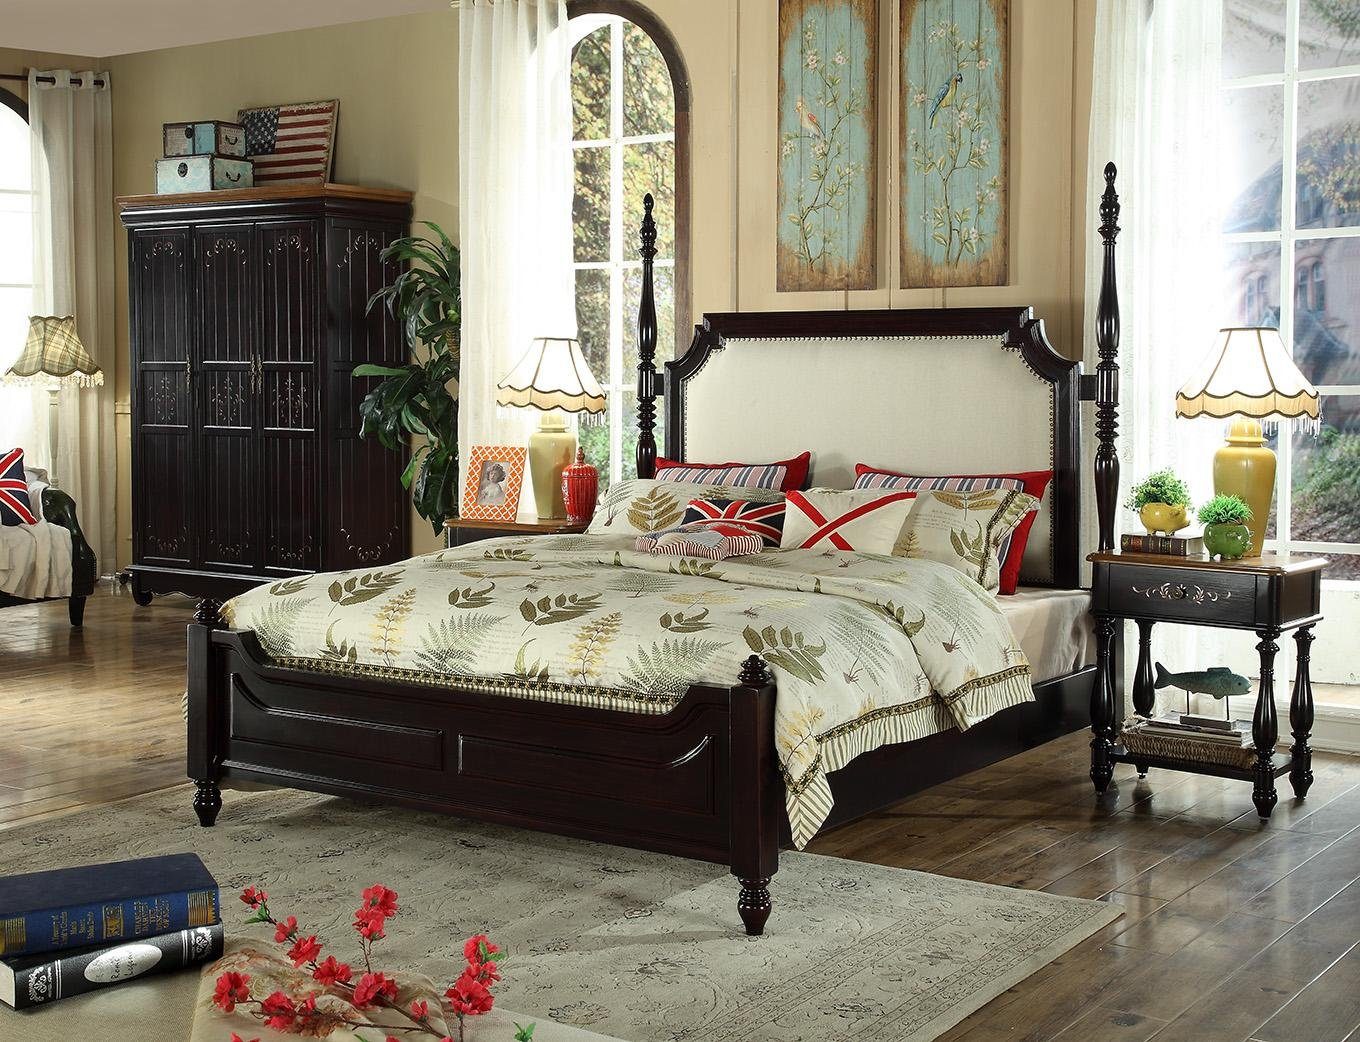 JVmoebel Schlafzimmer-Set, Amerikanische Holz Betten Luxus Echtholz Möbel  Schlafzimmer Bett 3tl.